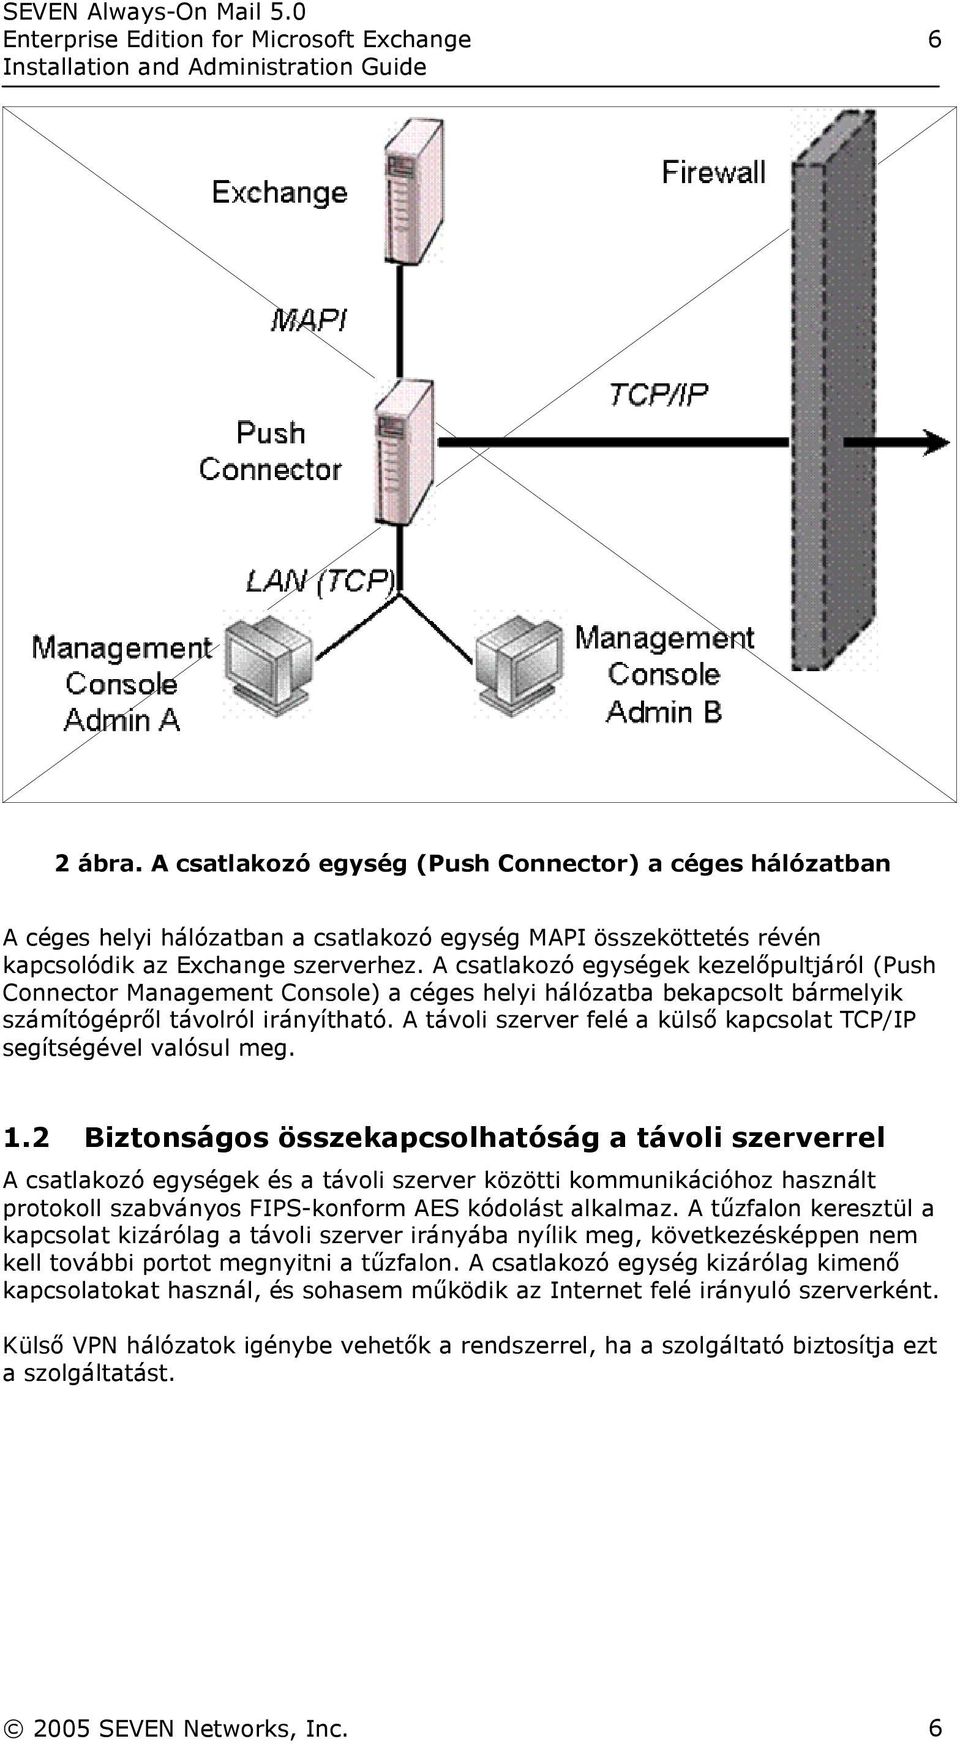 A csatlakozó egységek kezelőpultjáról (Push Connector Management Console) a céges helyi hálózatba bekapcsolt bármelyik számítógépről távolról irányítható.